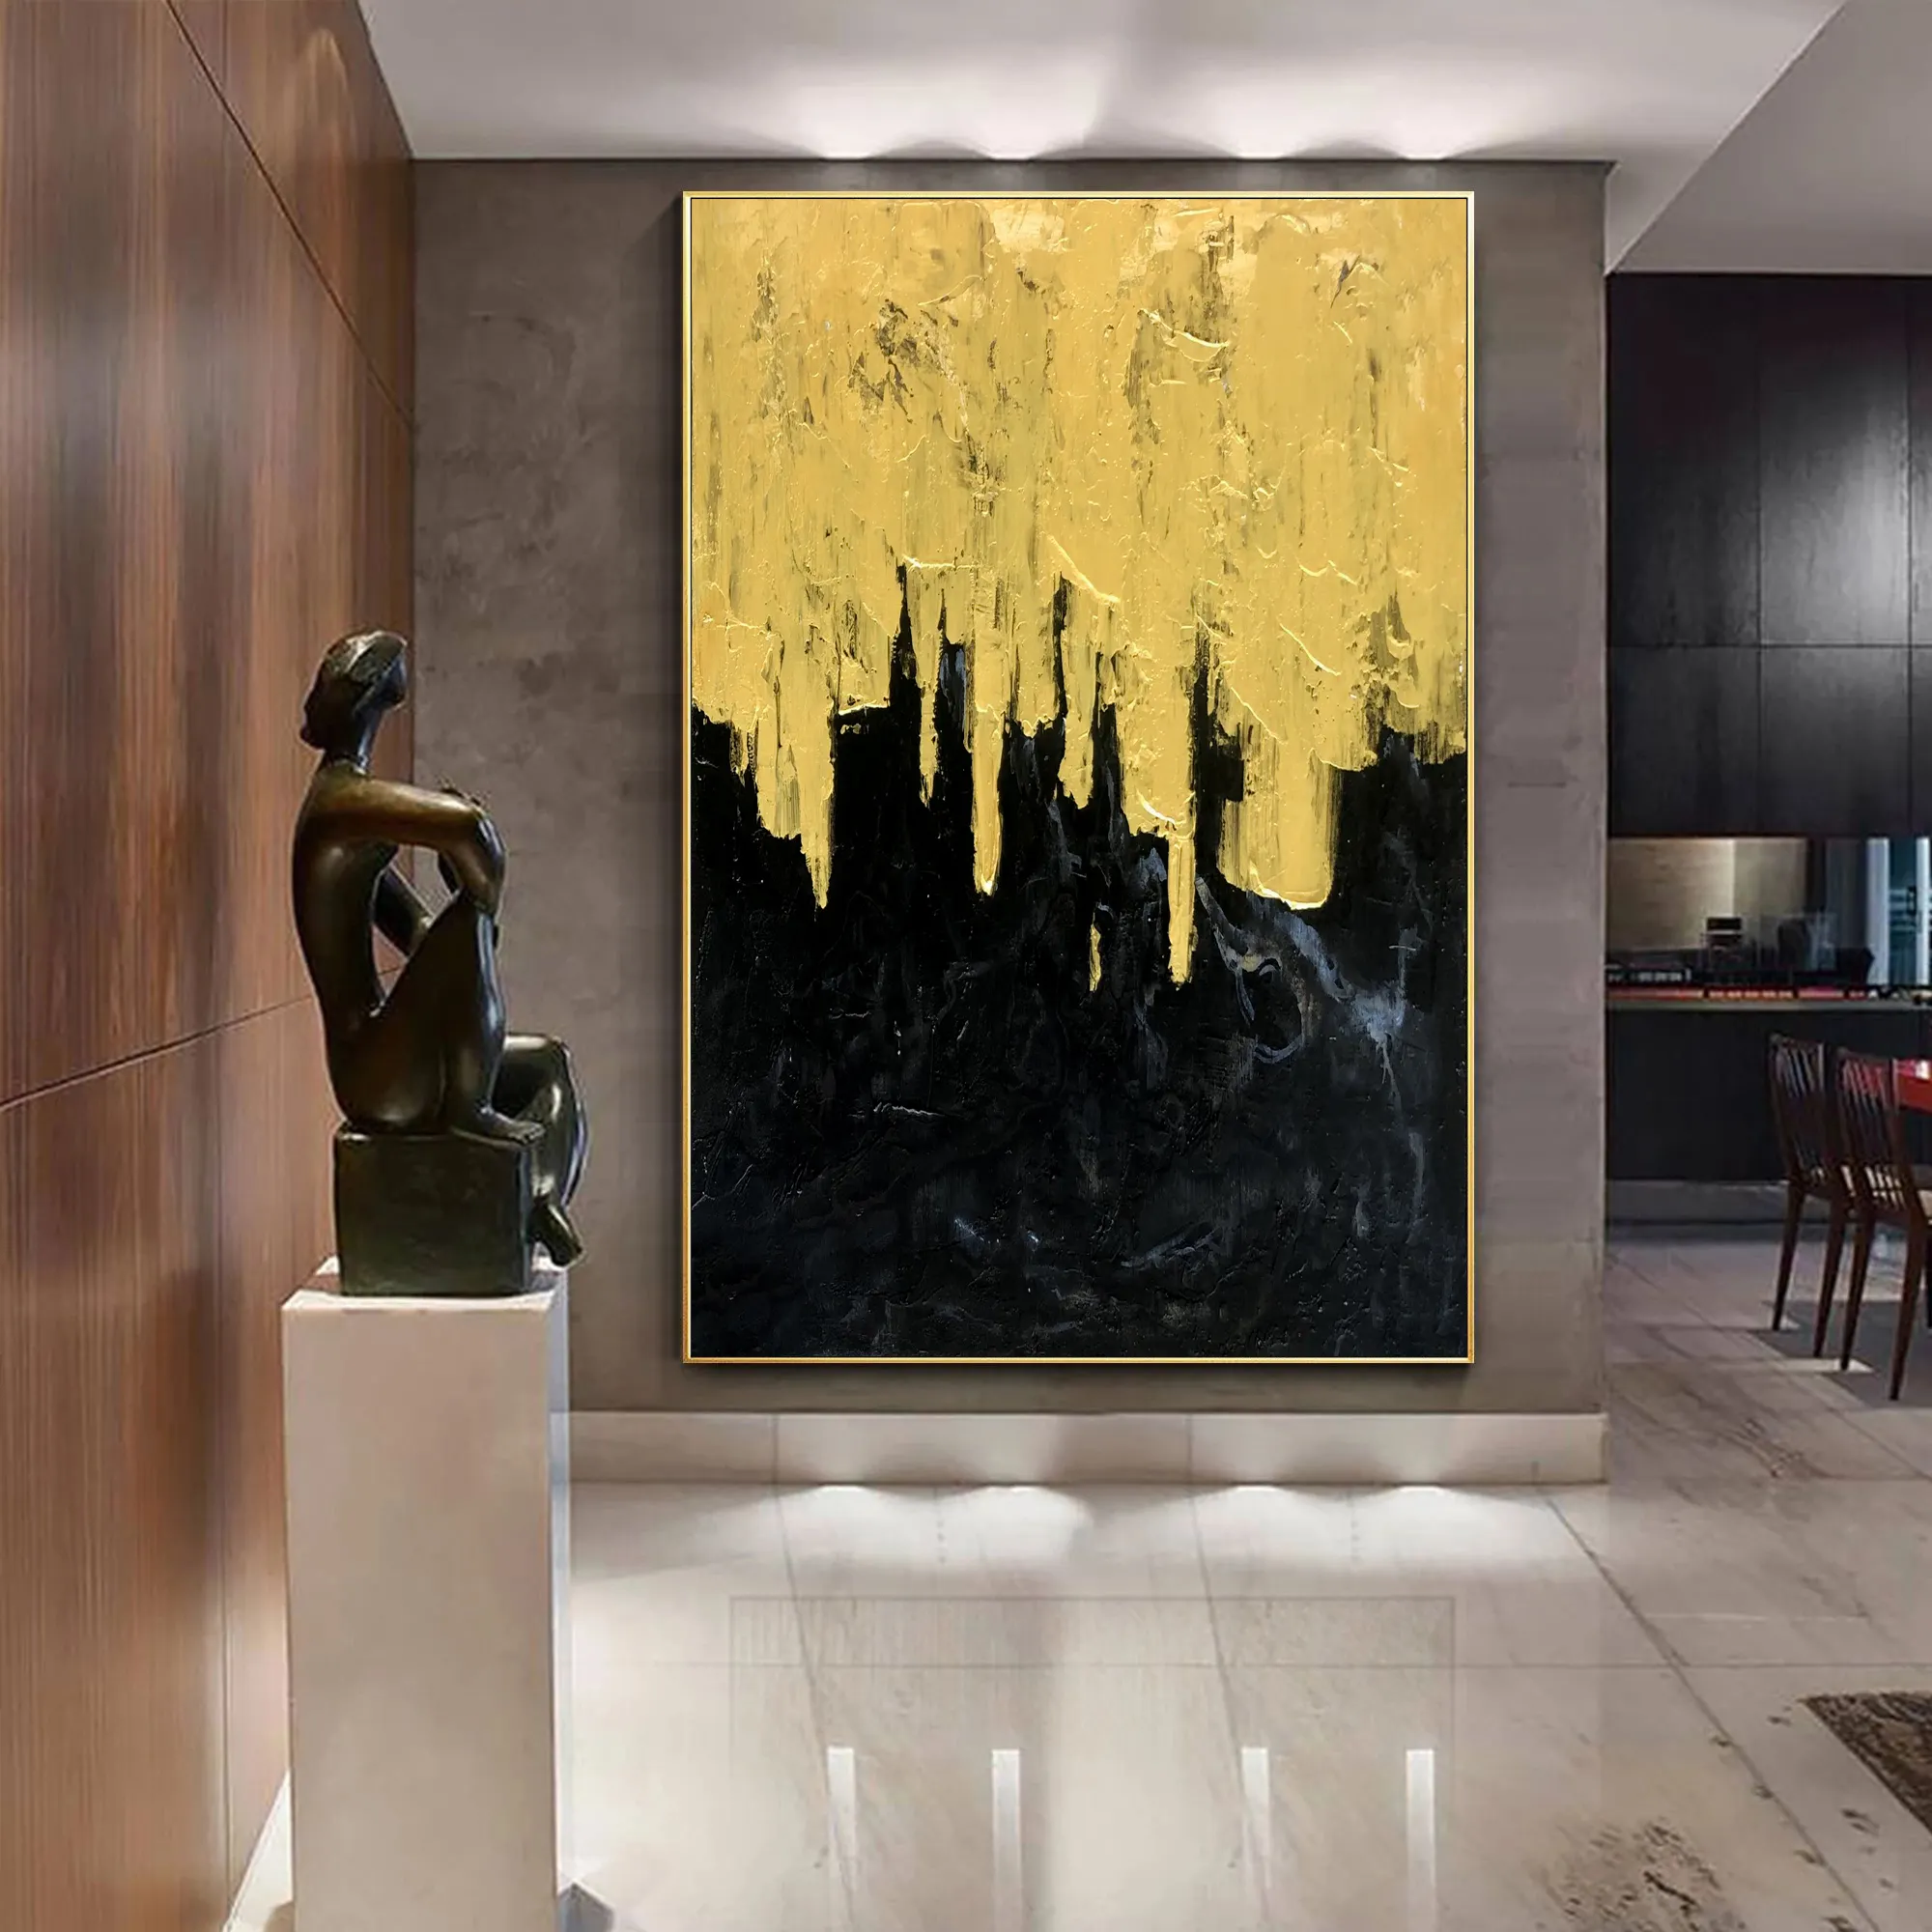 Pintura à mão extra grande parede arte decoração moderna acrílica folha de ouro abstrata pintura a óleo em tela